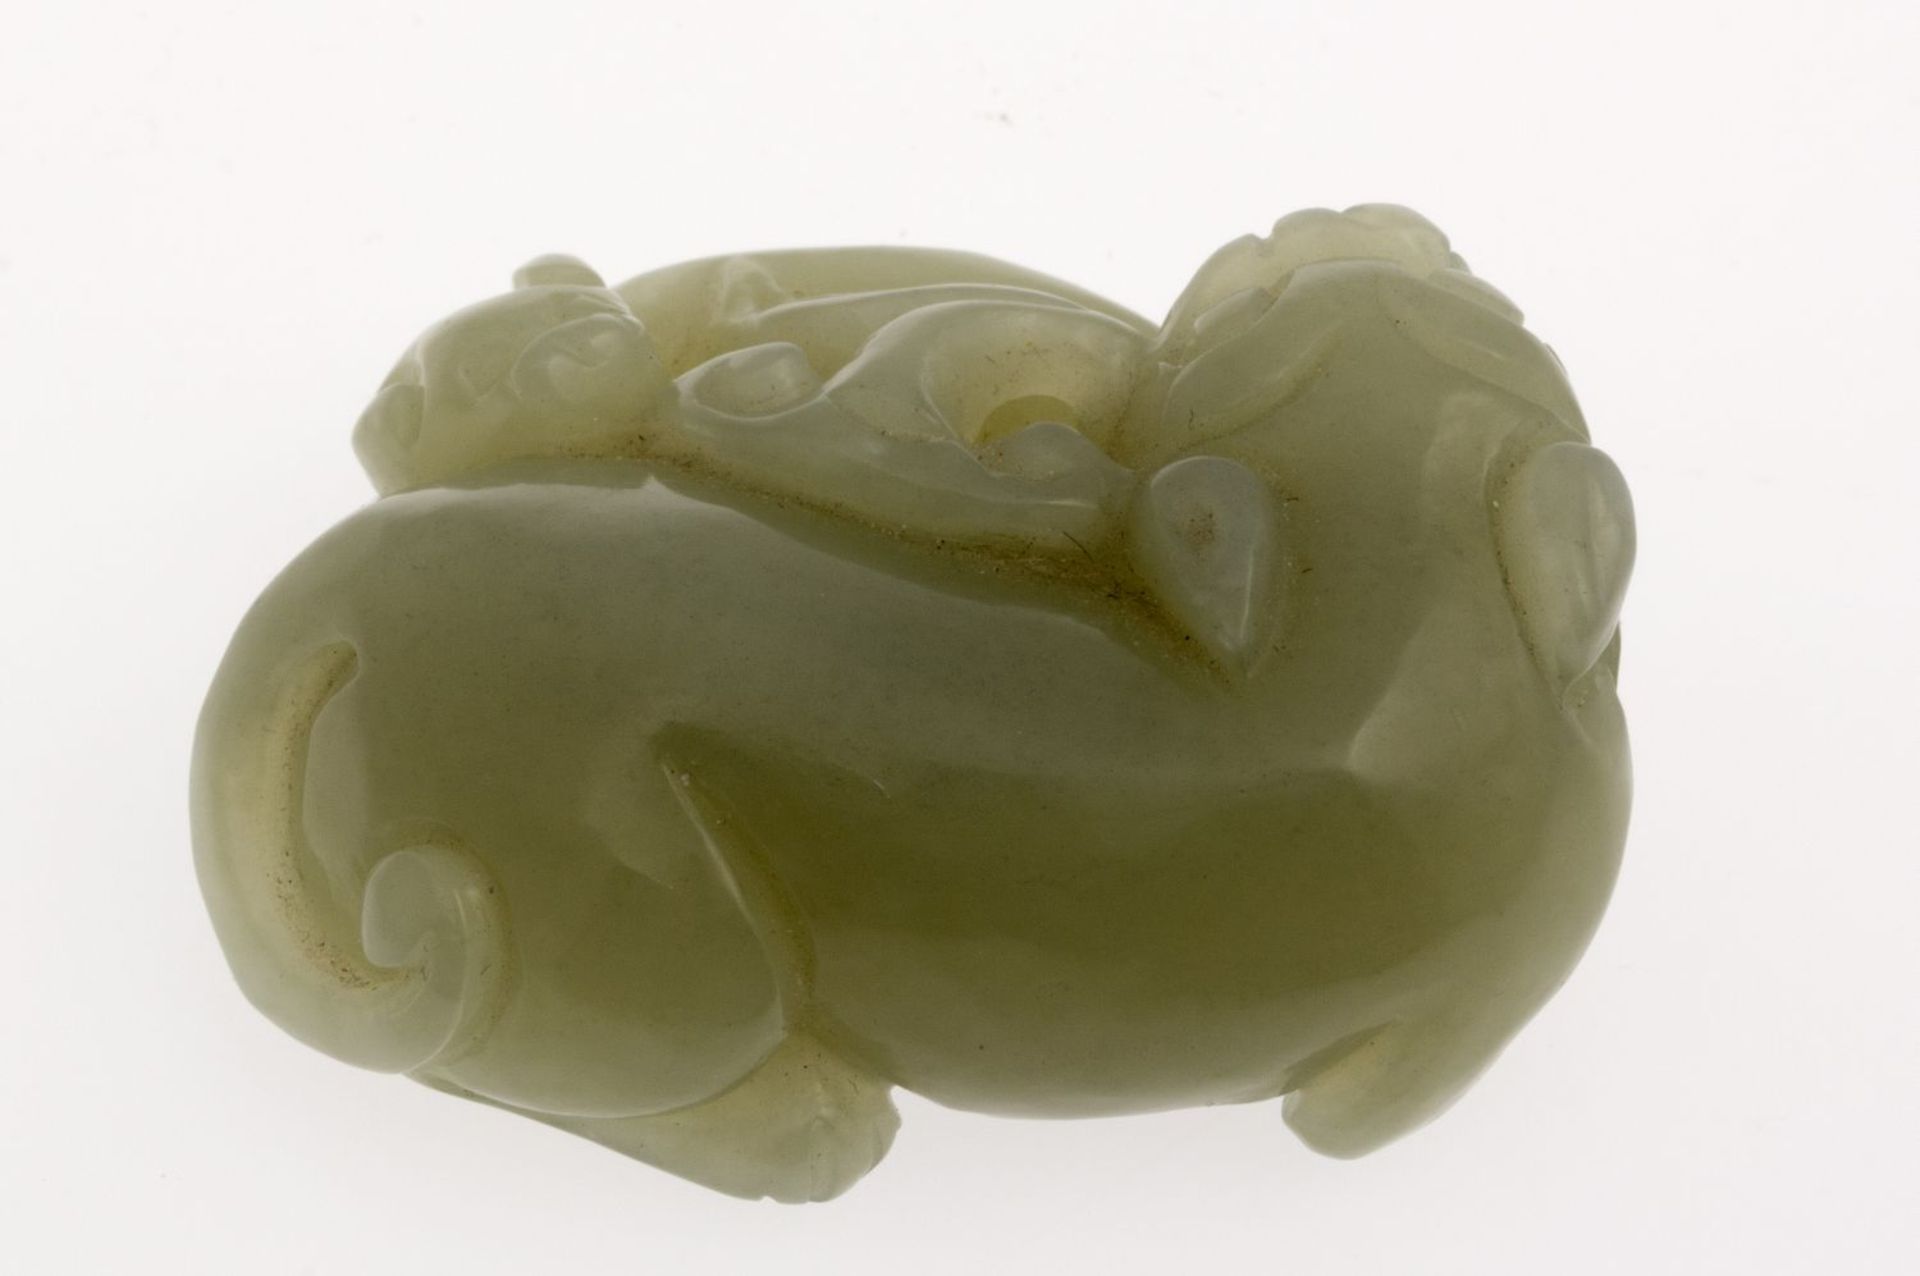 Fo-Hund mit JungemWohl hellgrüne Jade. China, wohl 19./20. Jh. L. 5 cm.- - -27.00 % buyer's - Bild 3 aus 4